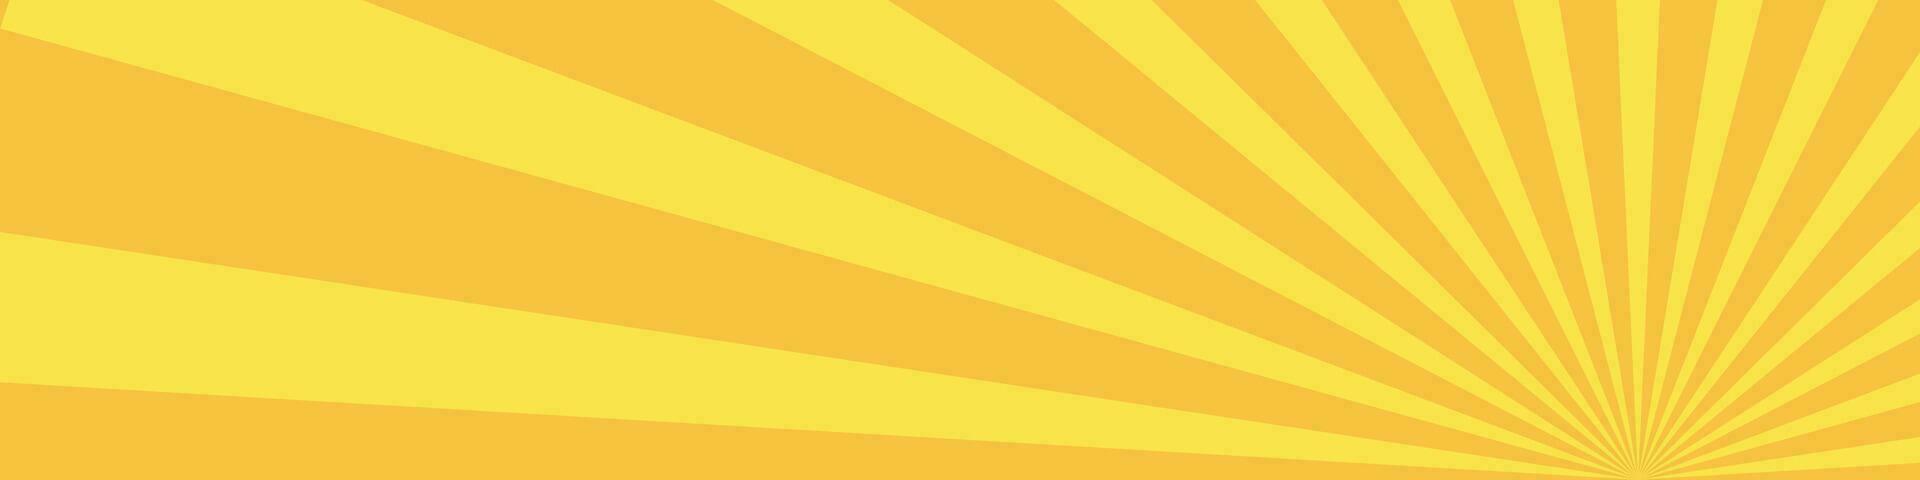 komisk sunburst med vibrerande gul Sol strålar. strålnings pop- konst mönster betona orange ljus. bakgrund terar radiell strålar och stråle detaljer. platt illustration vektor